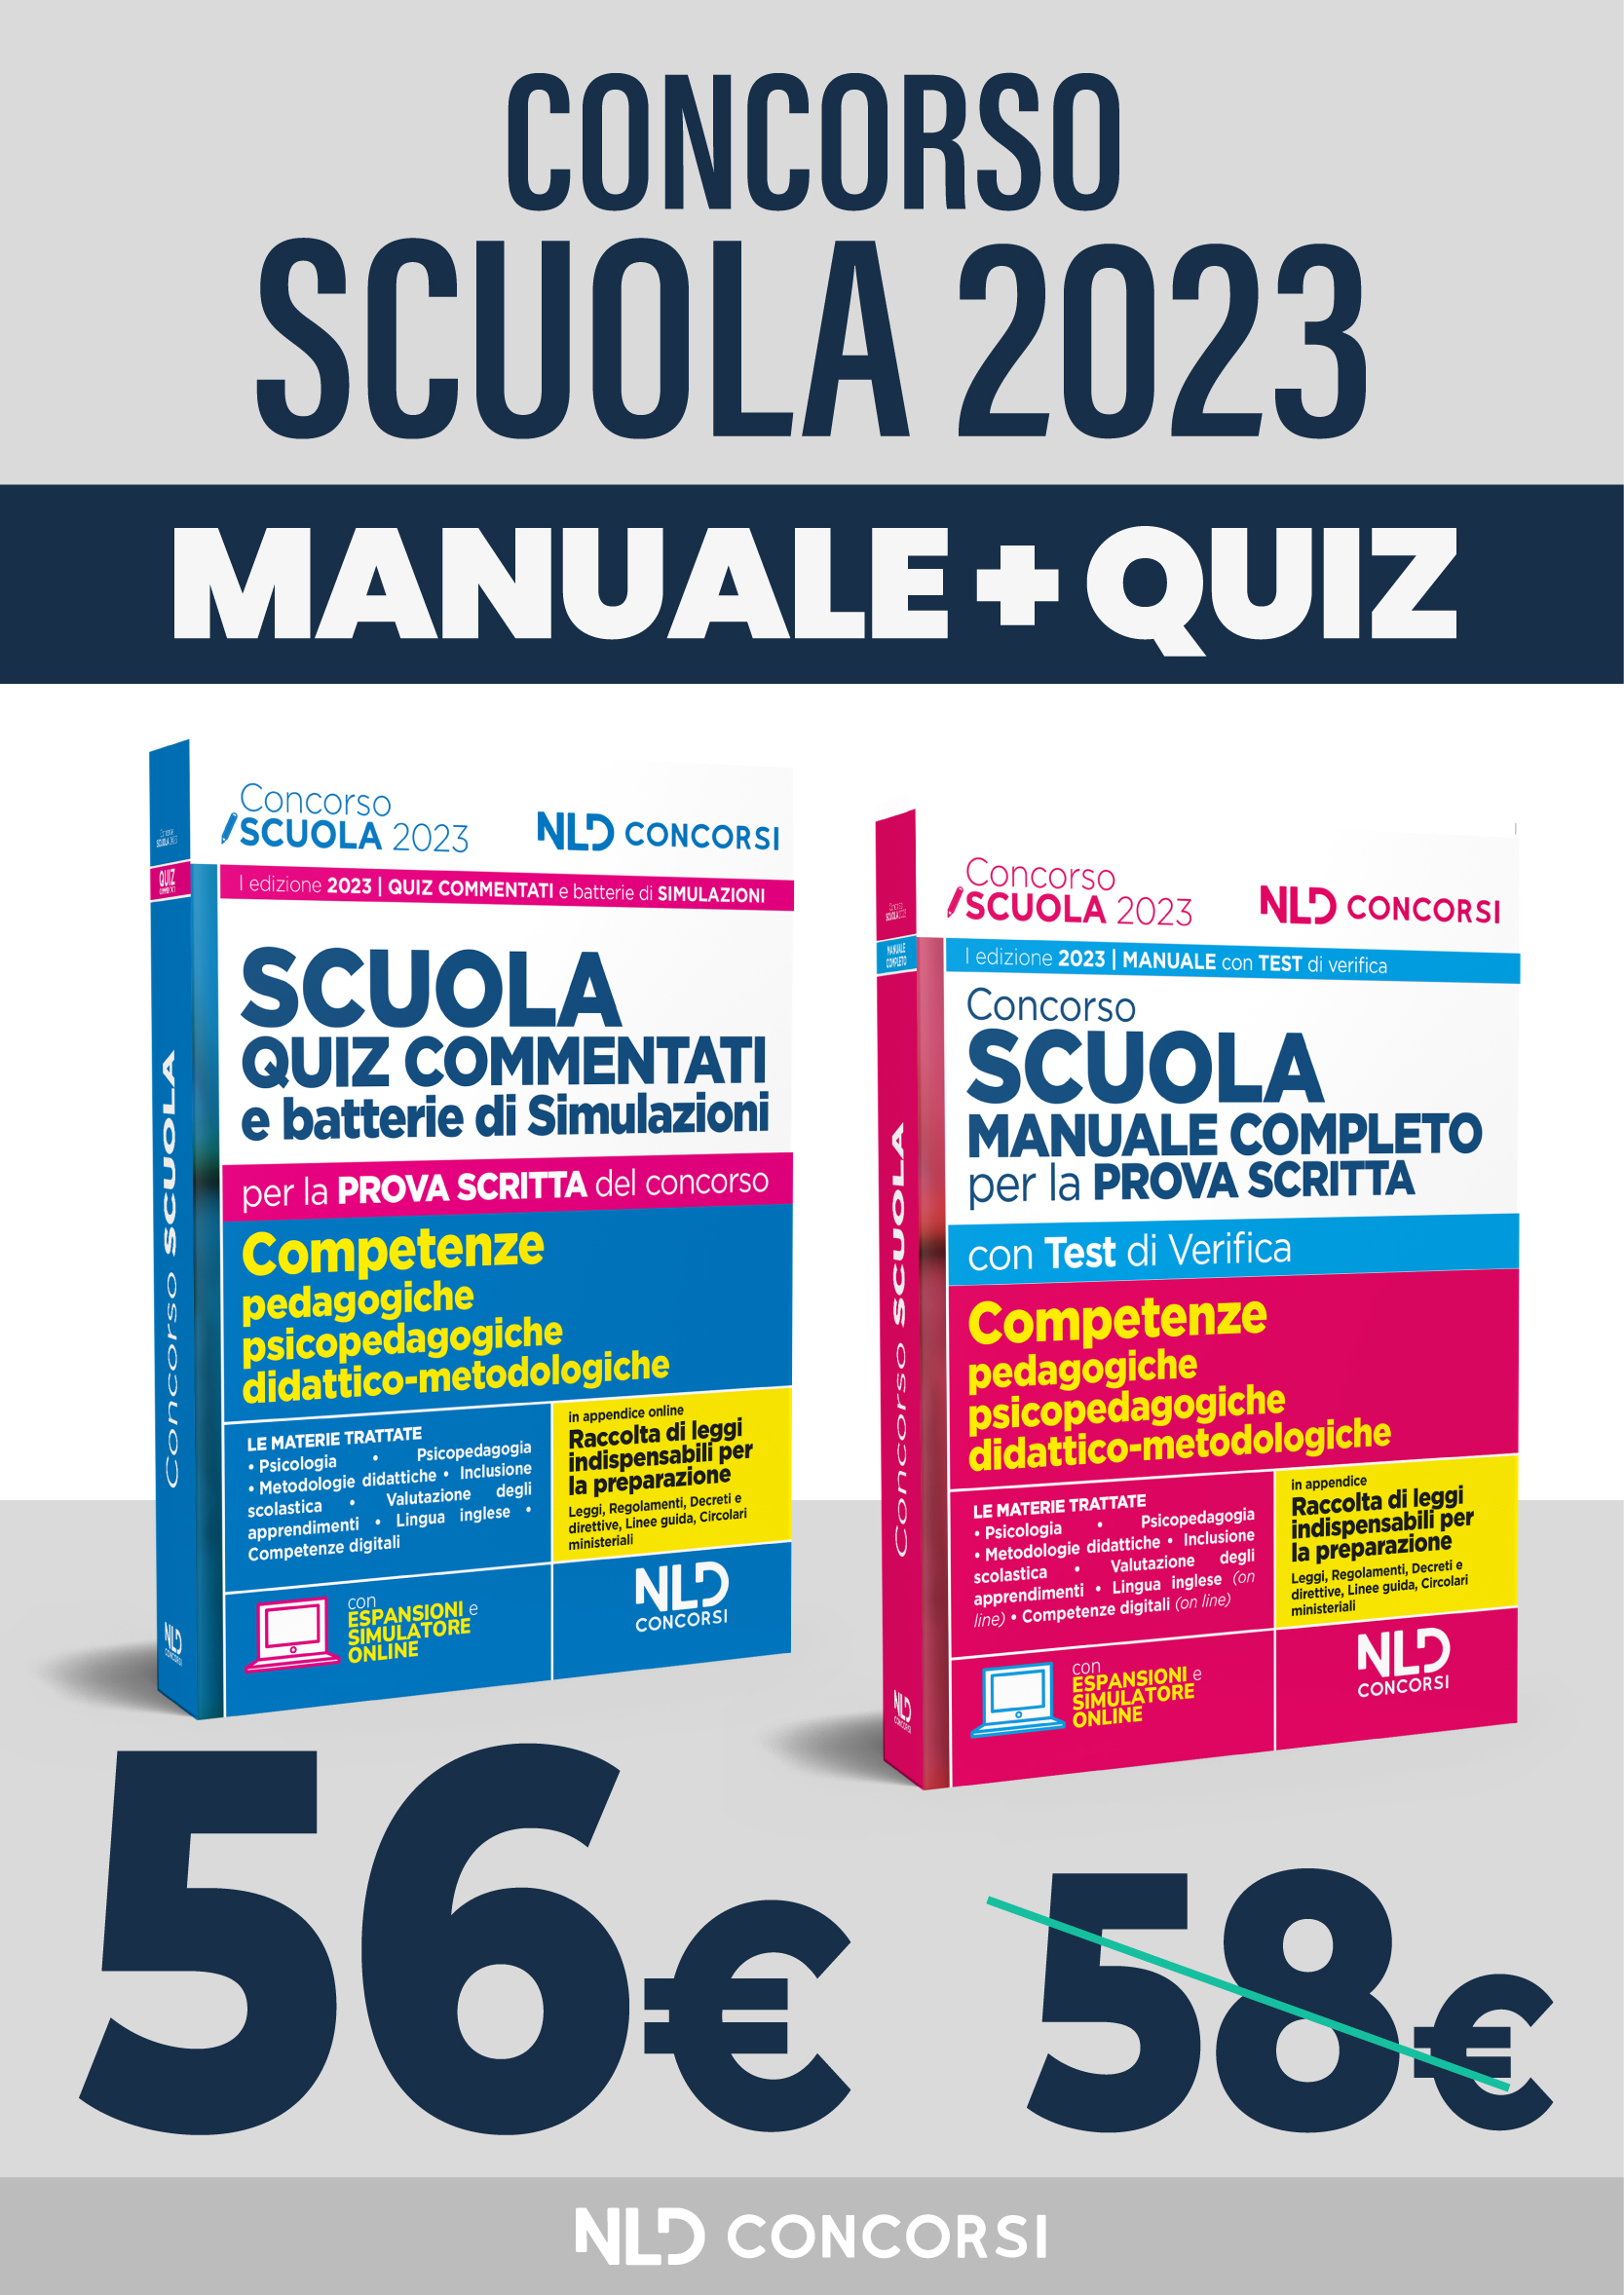 Concorso SCUOLA 2023 kit Manuale completo + Quiz commentati